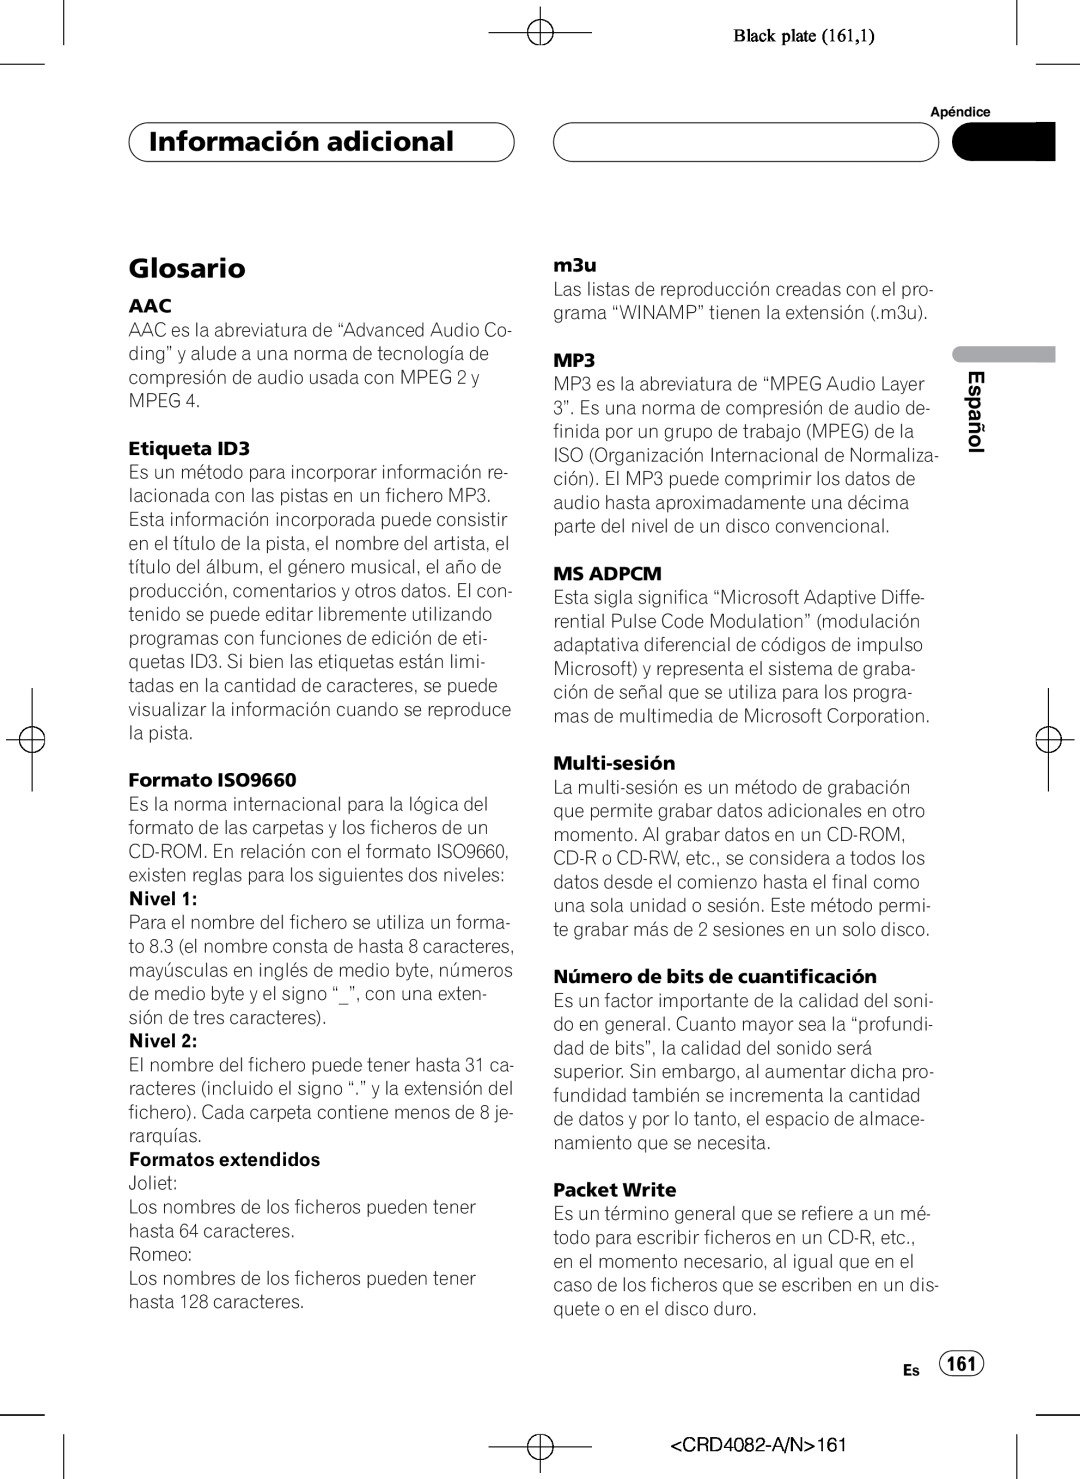 Pioneer DEH-P80RS operation manual Glosario, Black plate 161,1, Información adicional, Español 